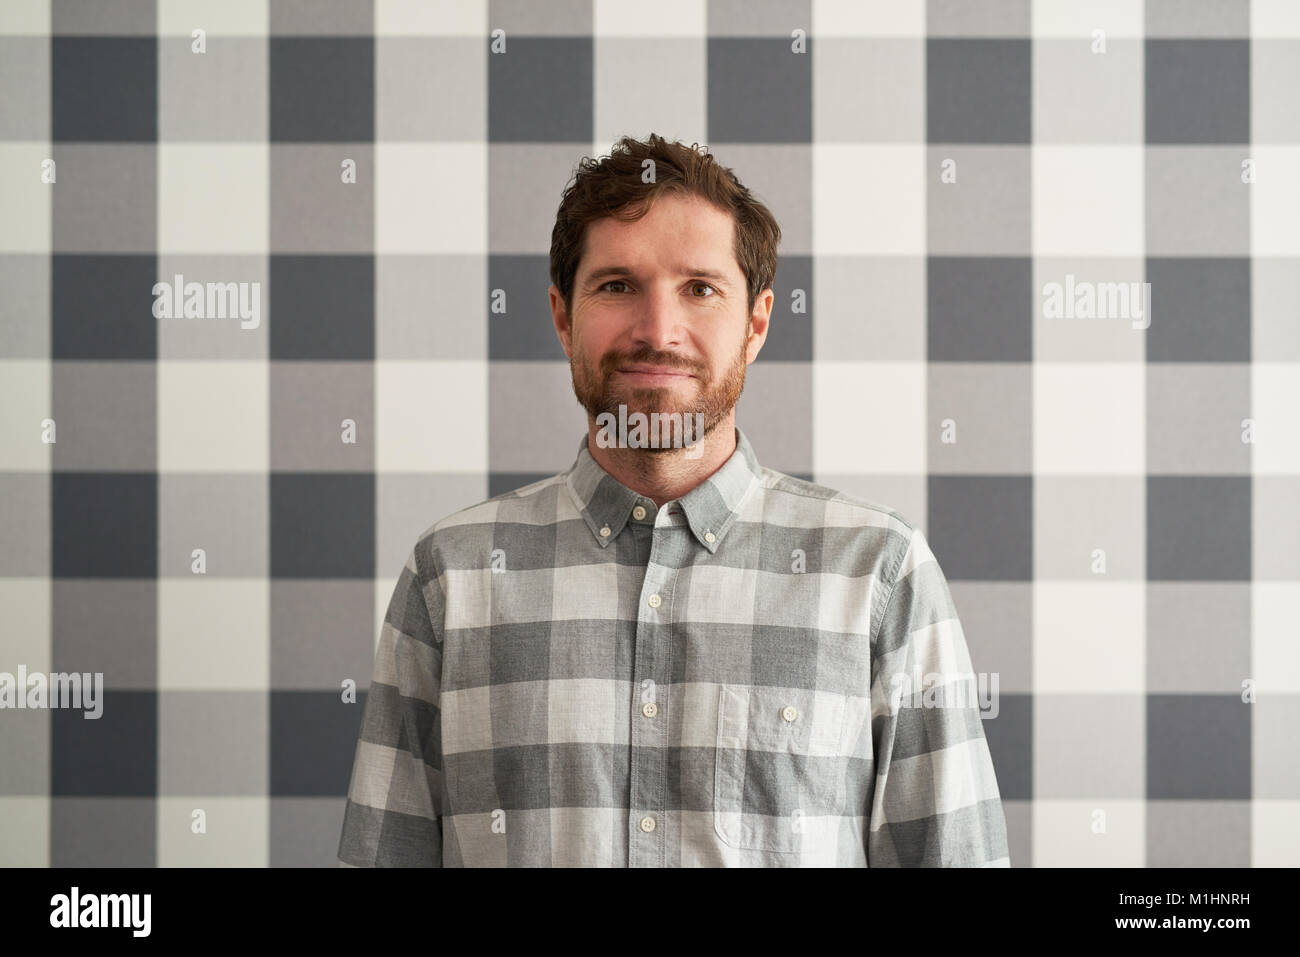 Sorridente giovane uomo che indossa una camicia a scacchi matching il suo sfondo Foto Stock